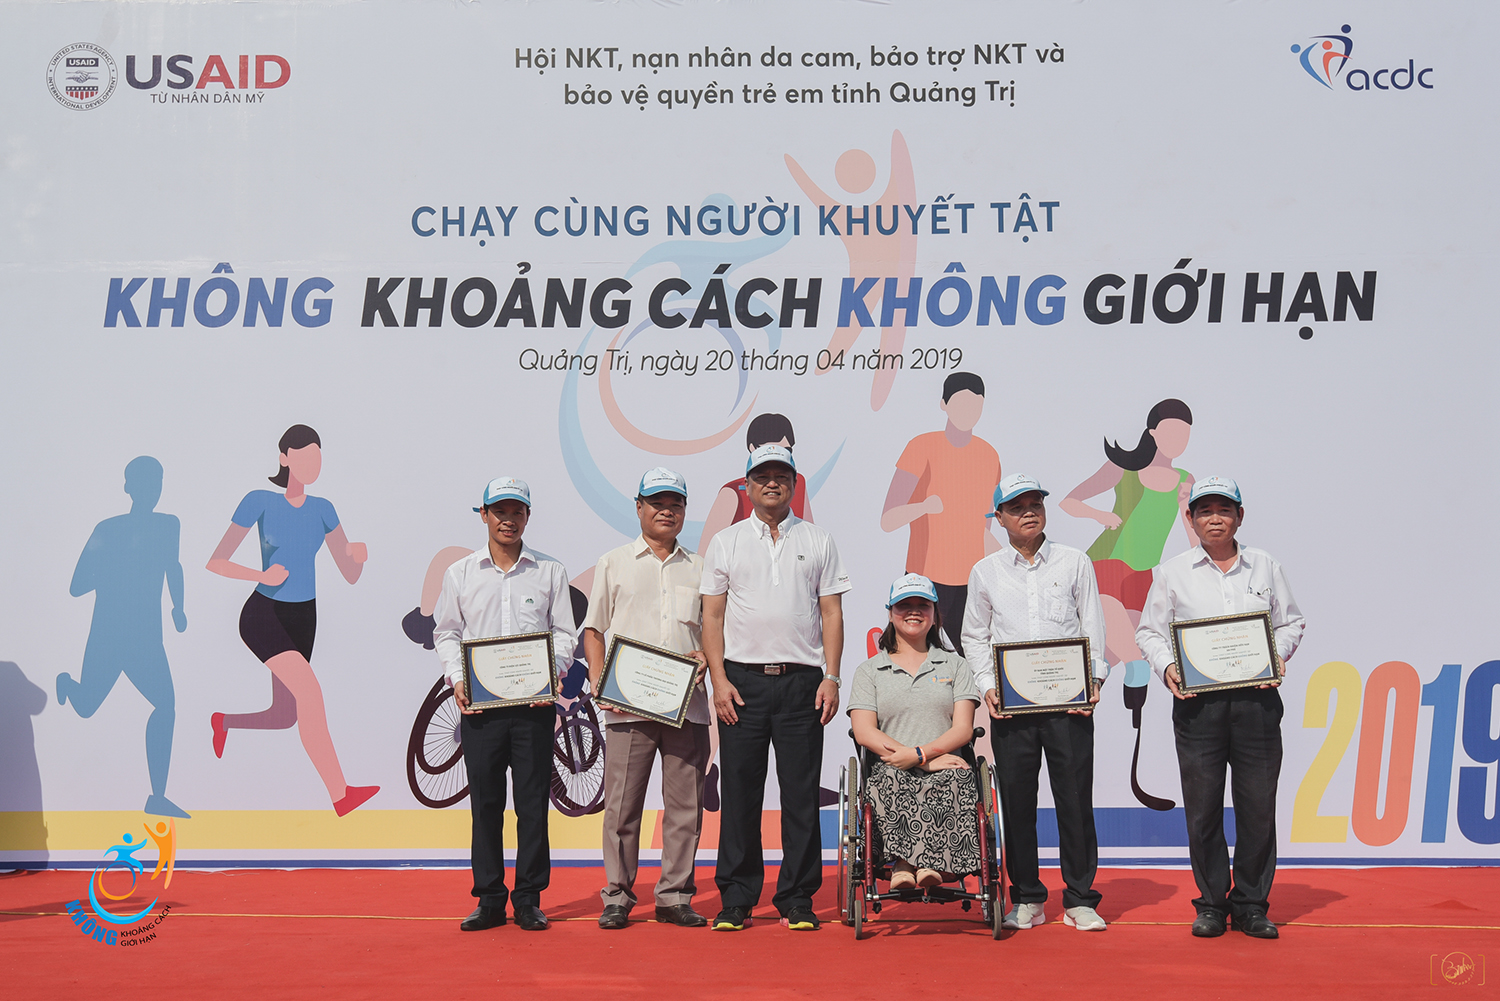 600 vận động viên “Chạy cùng người khuyết tật 2019” gây quỹ gần 300 triệu đồng